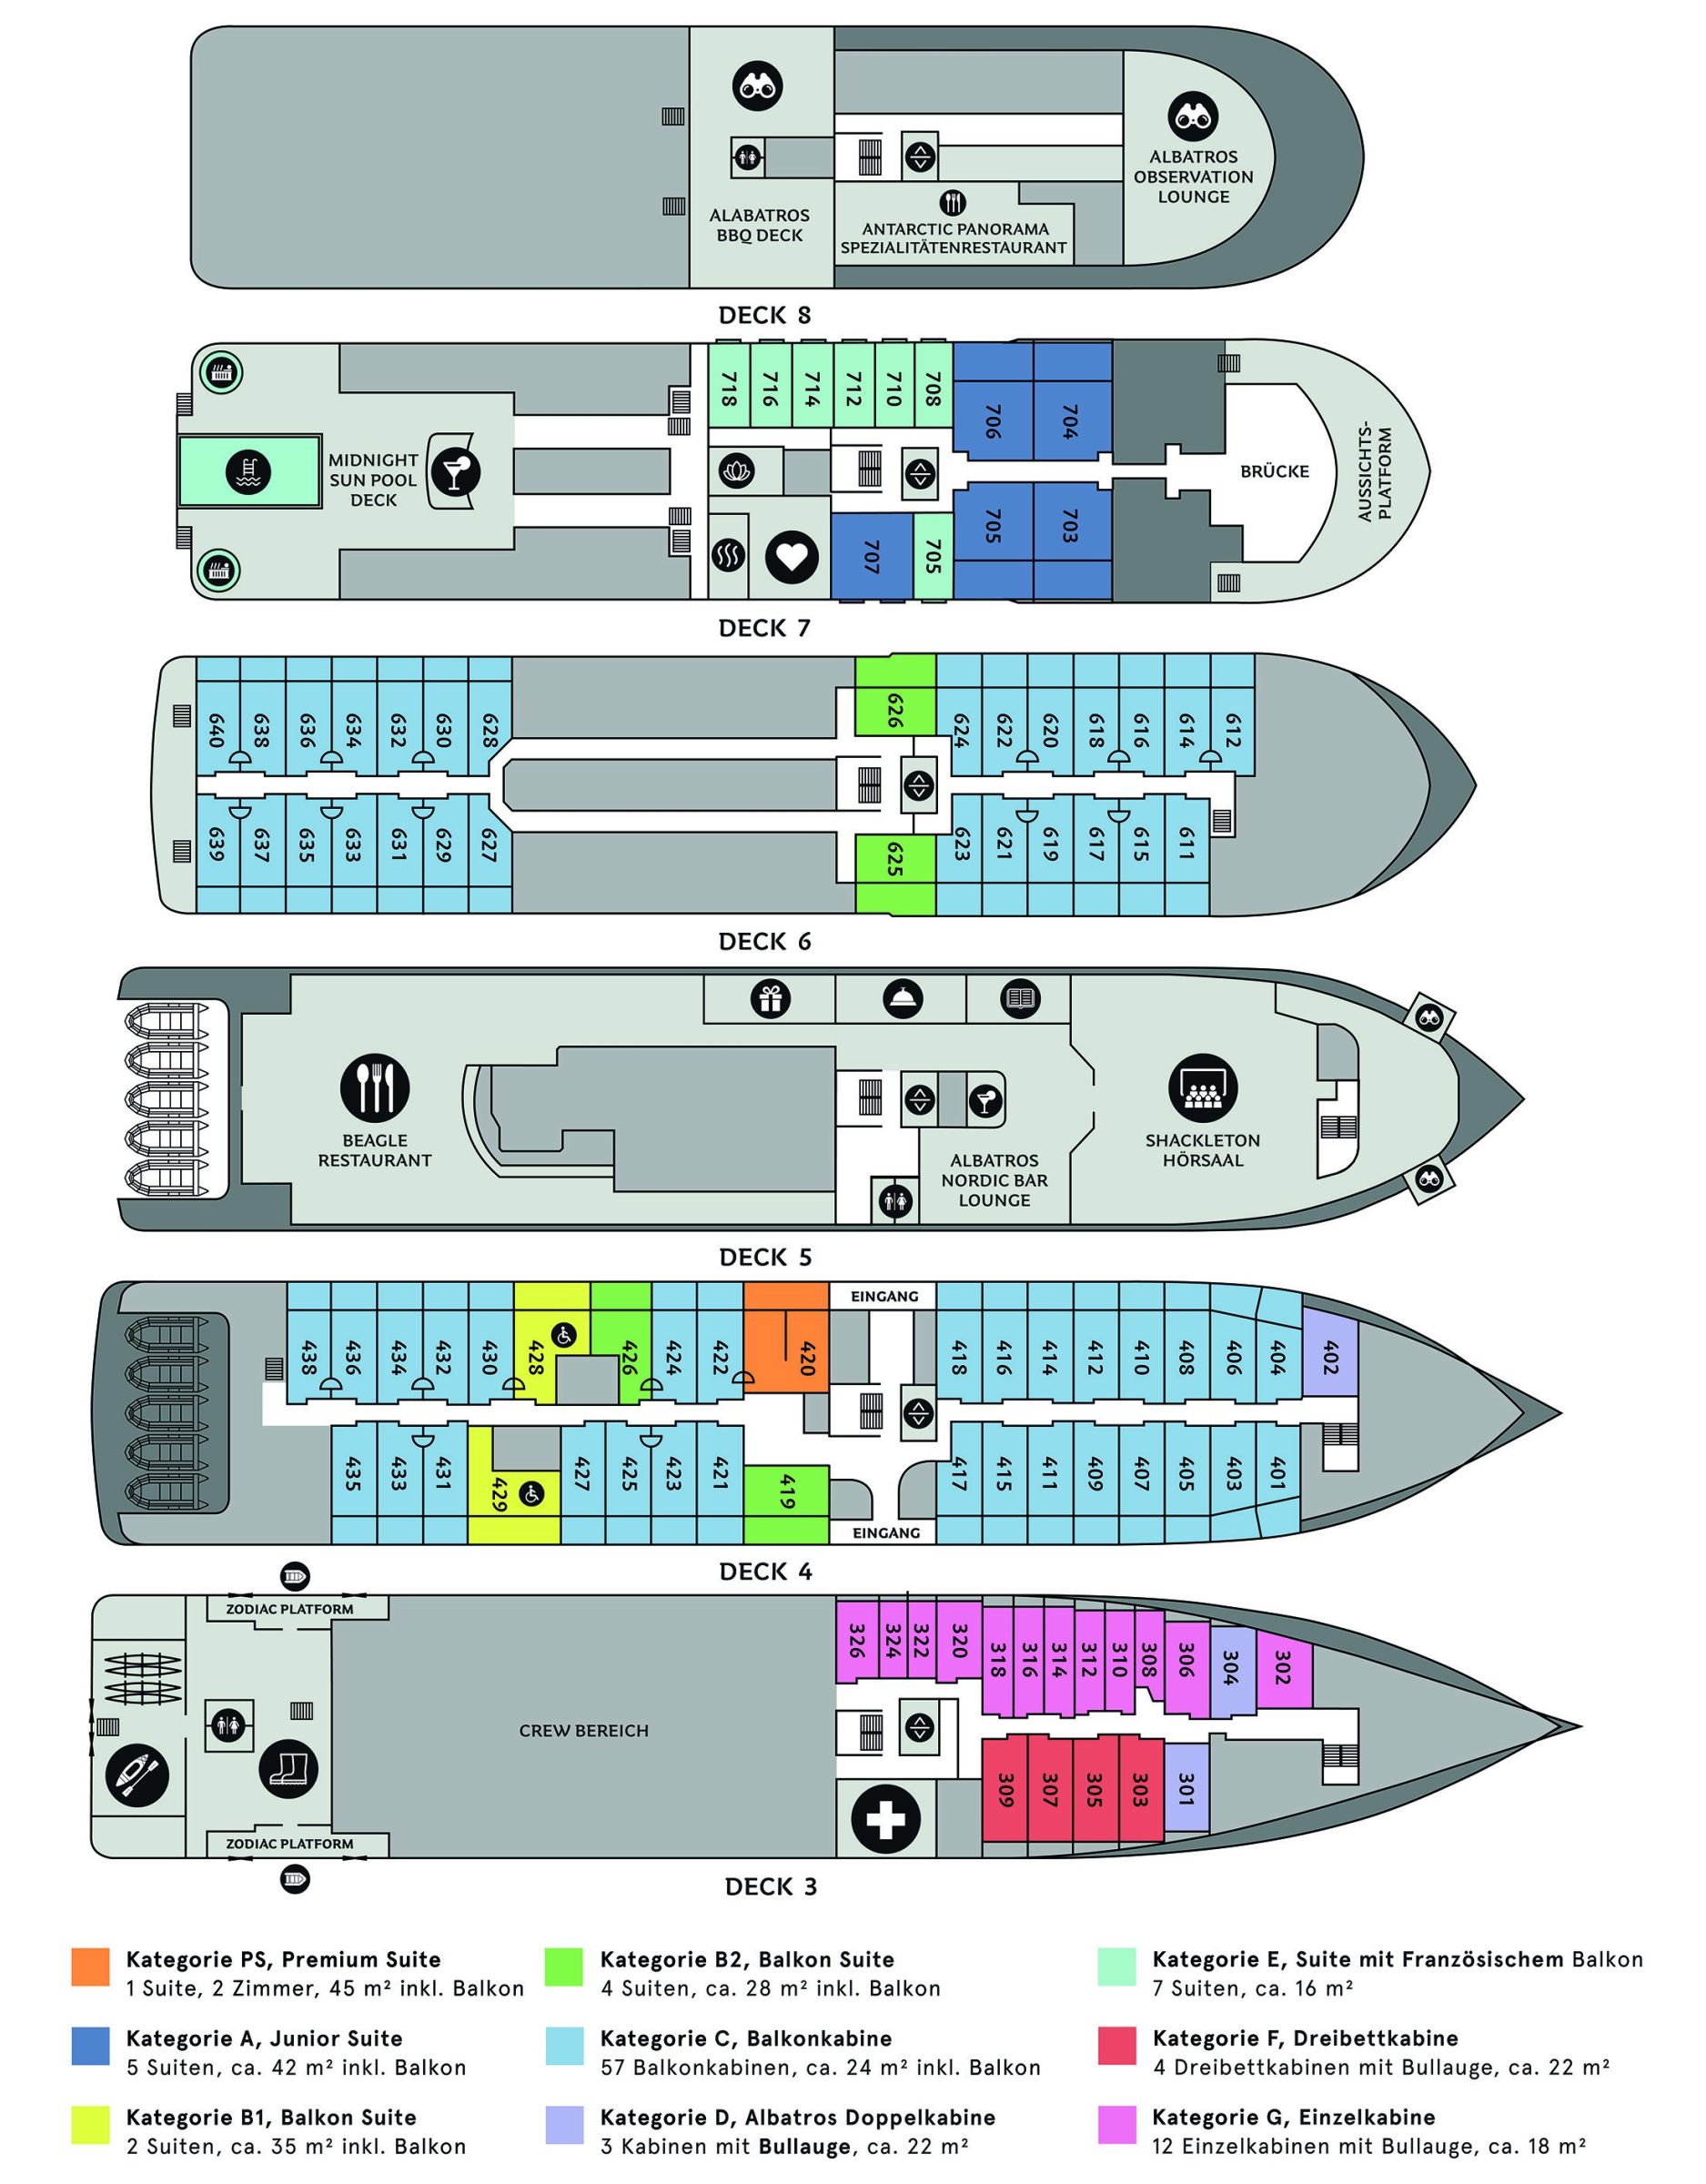 Deckplan m/v Ocean Albatros